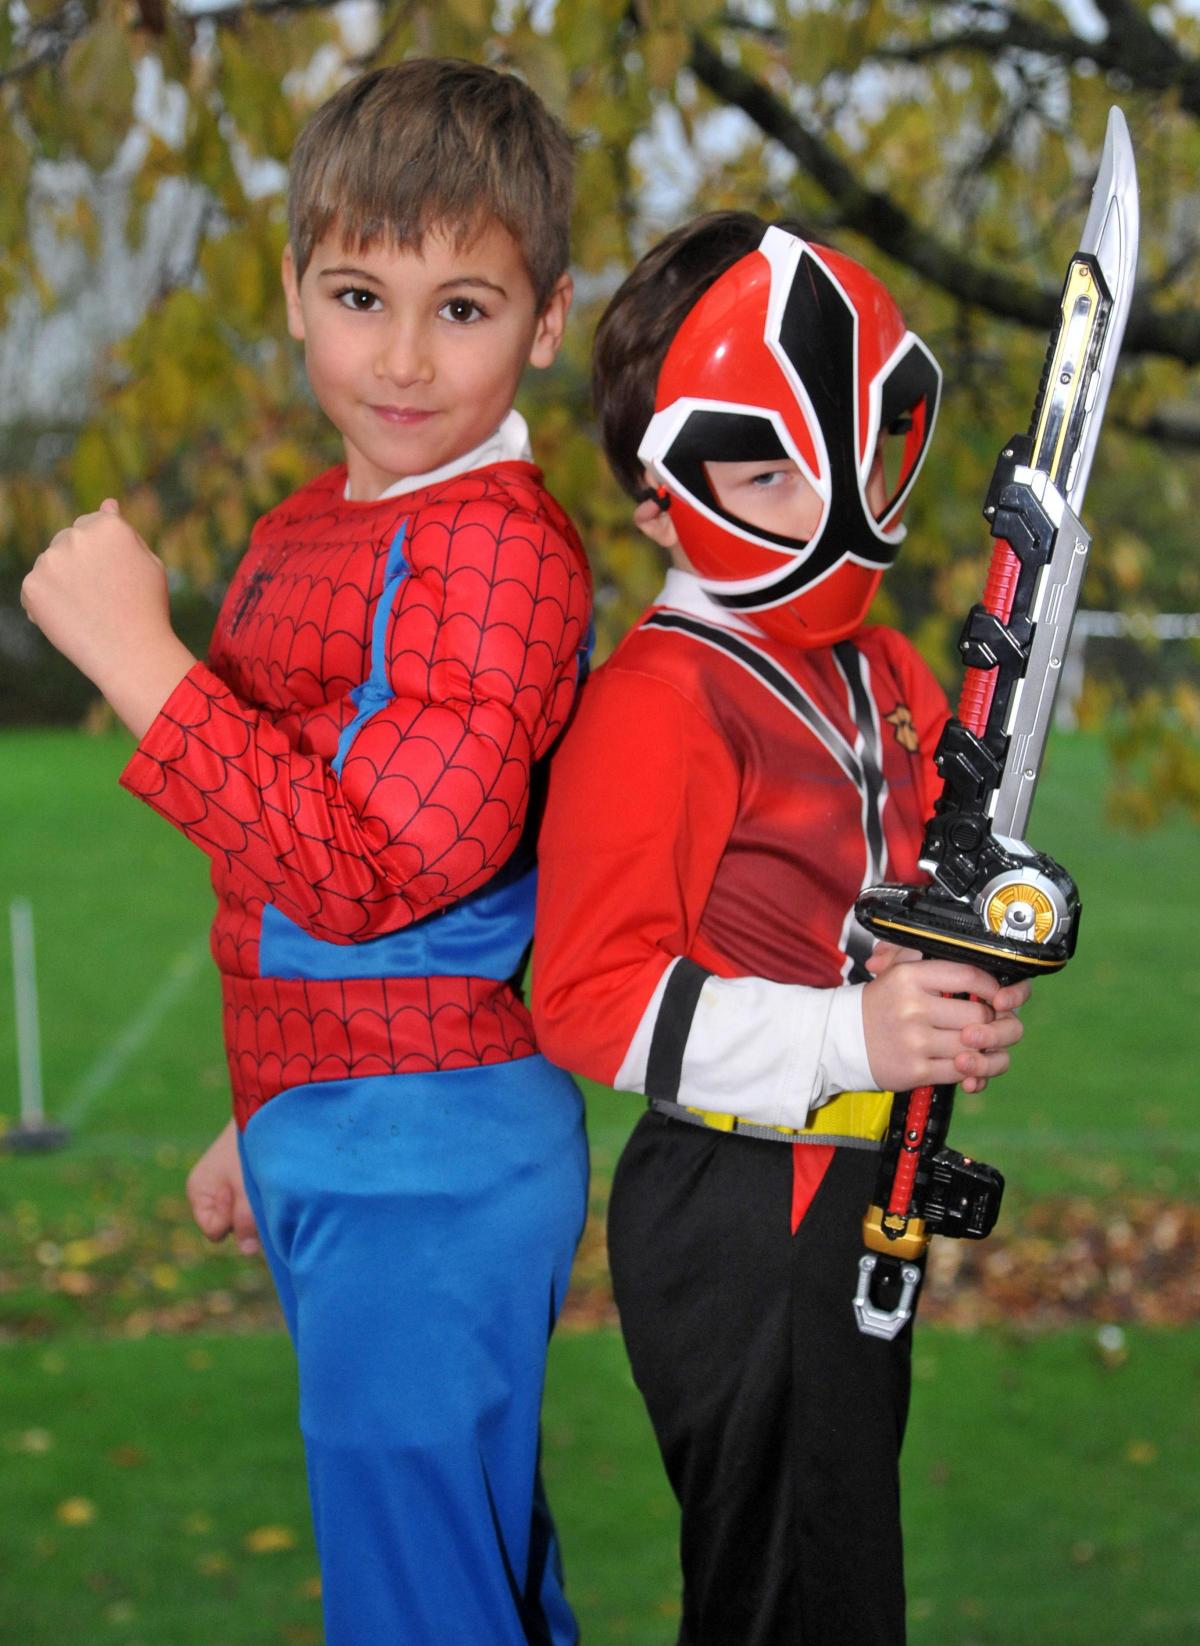 Superhero day at Wanborough Primary School